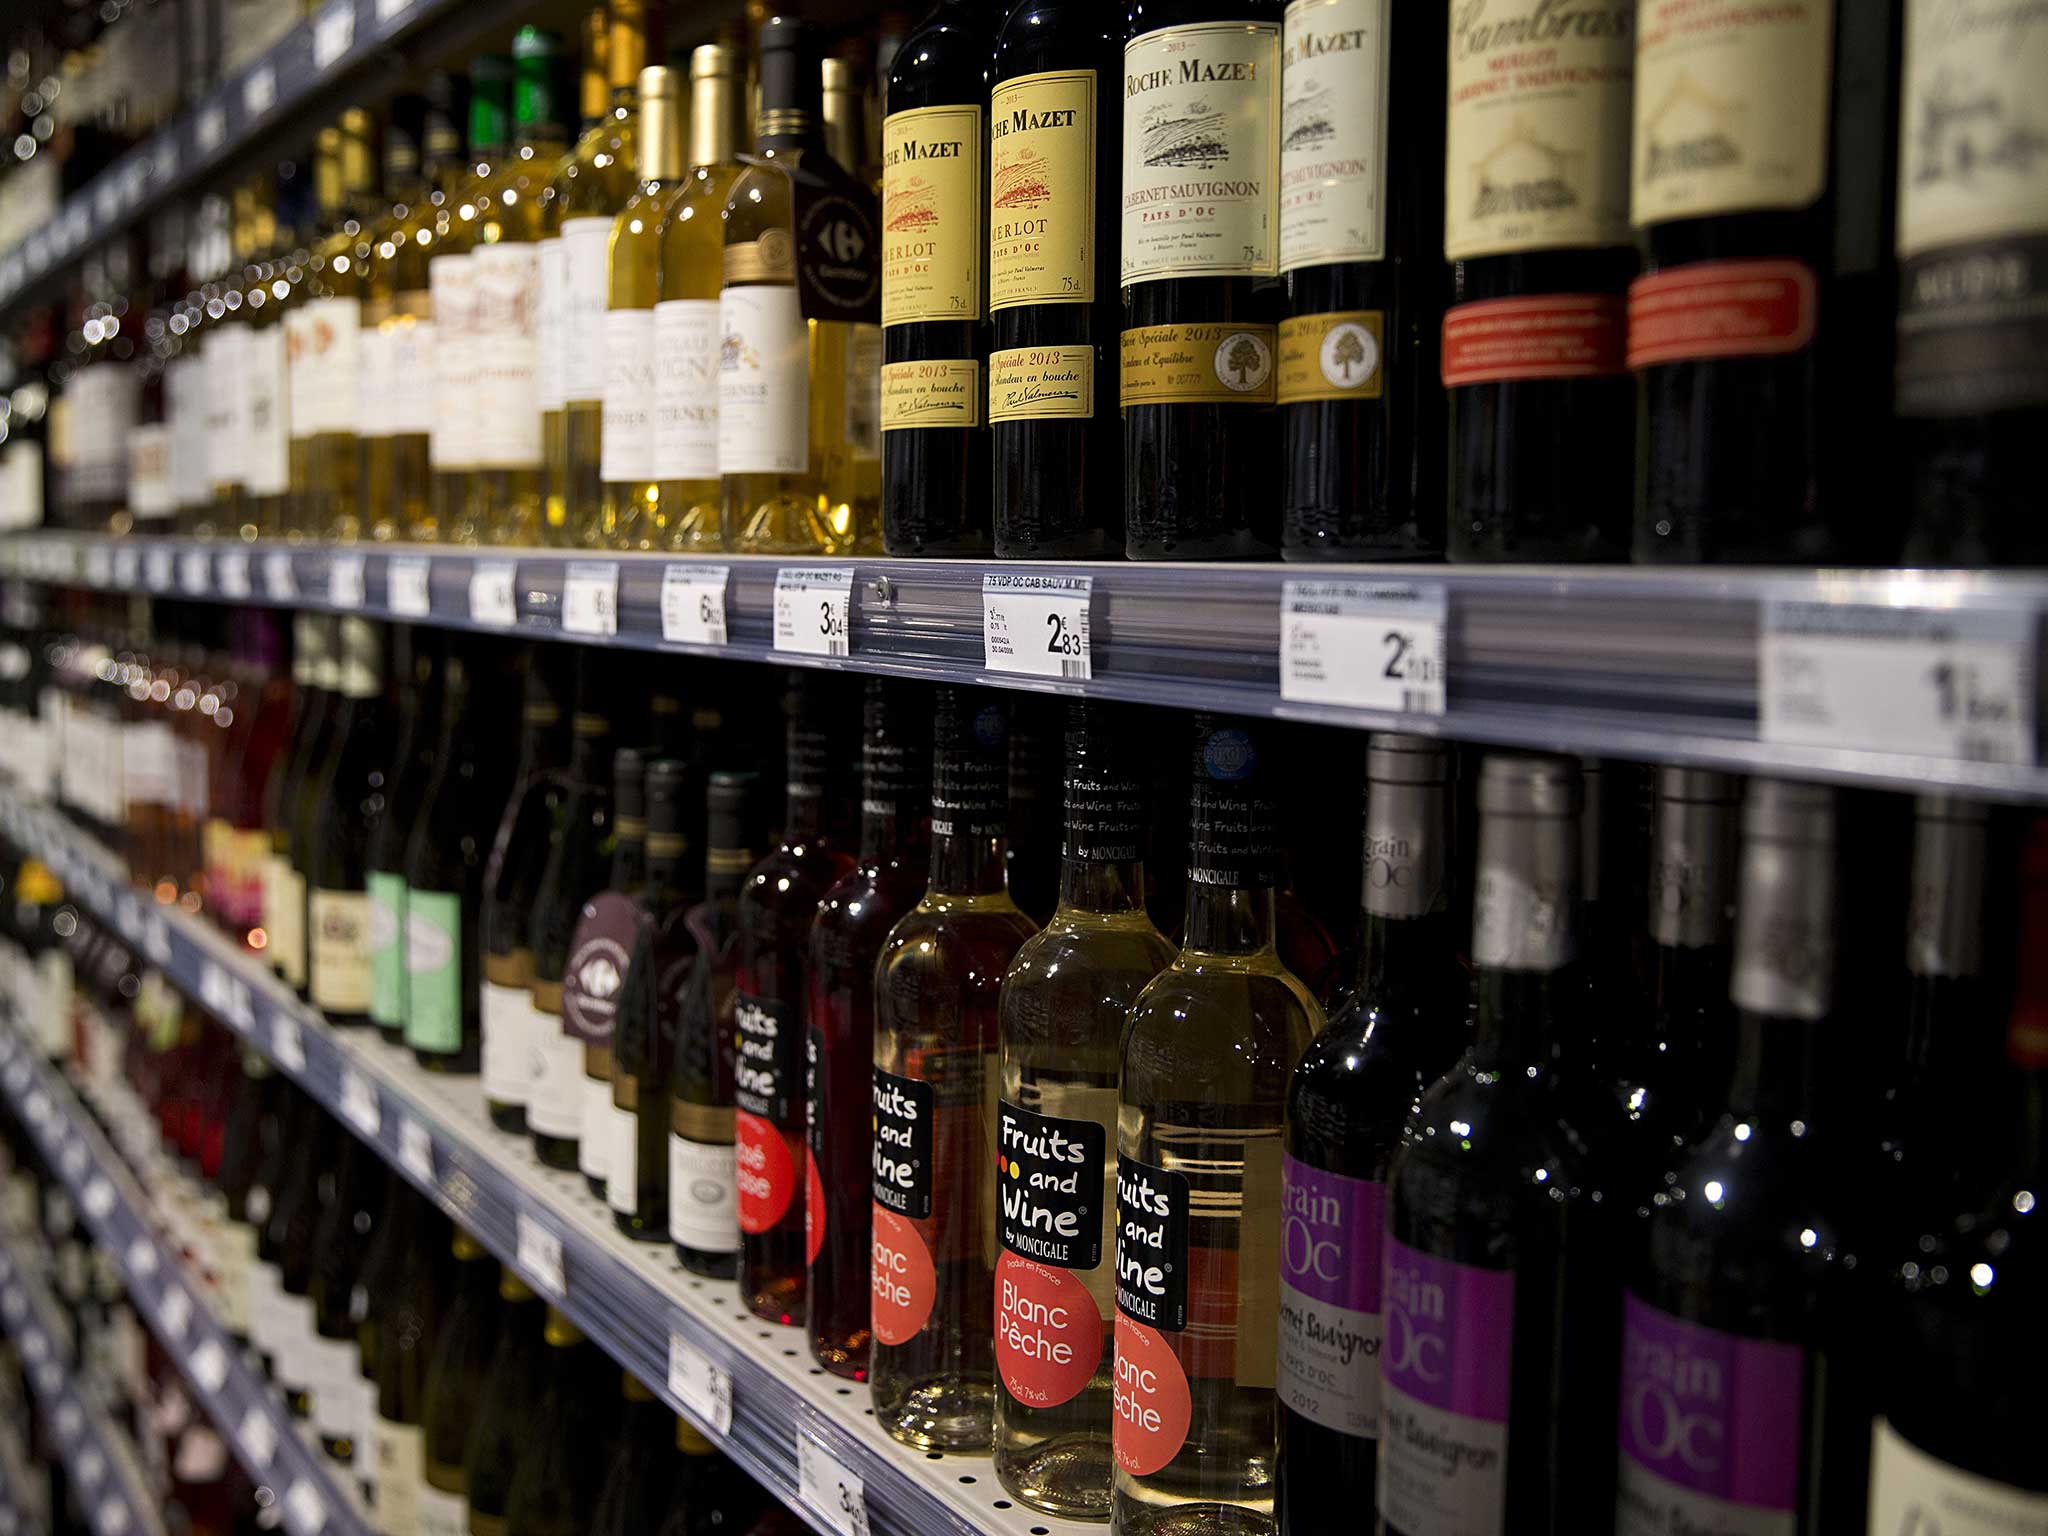 Lidl stocks the best value for money wine